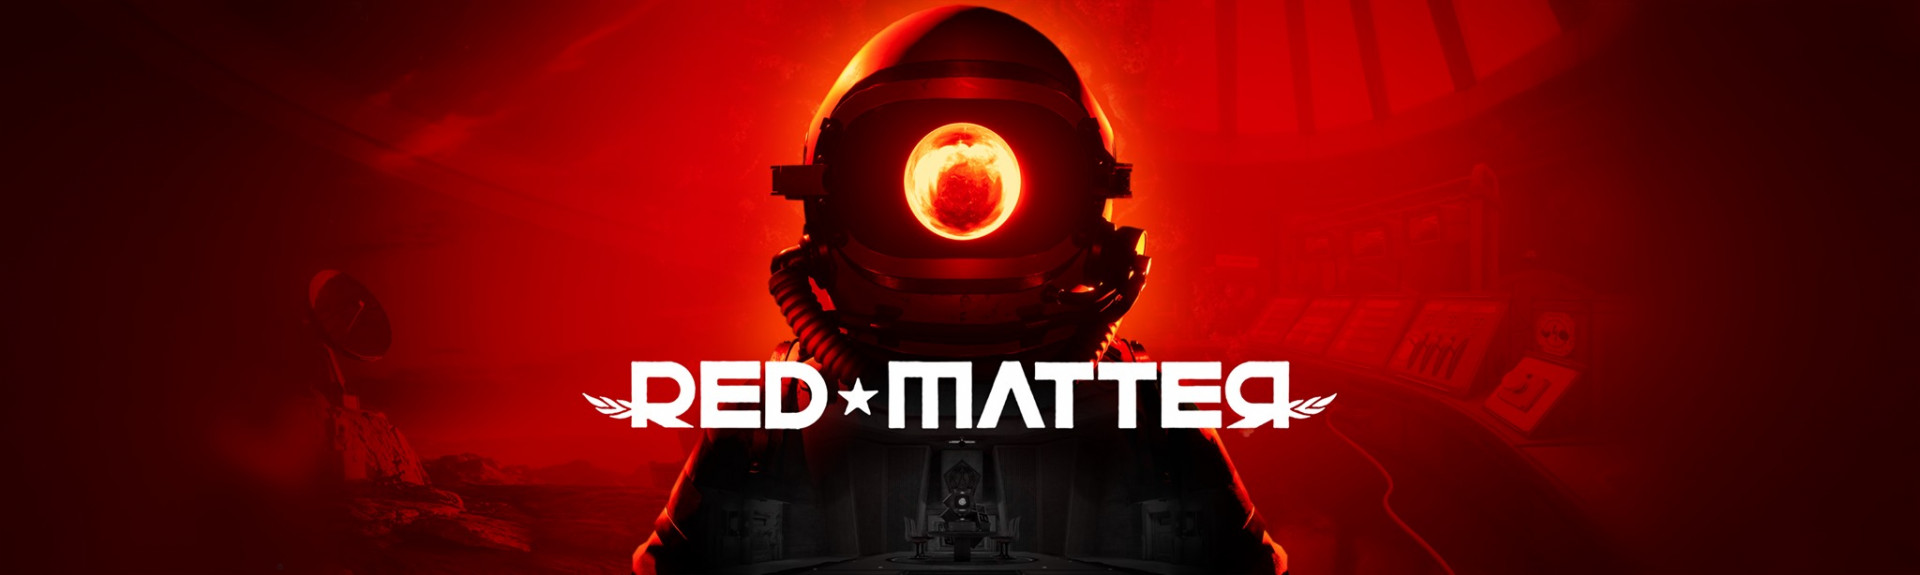 Red Matter